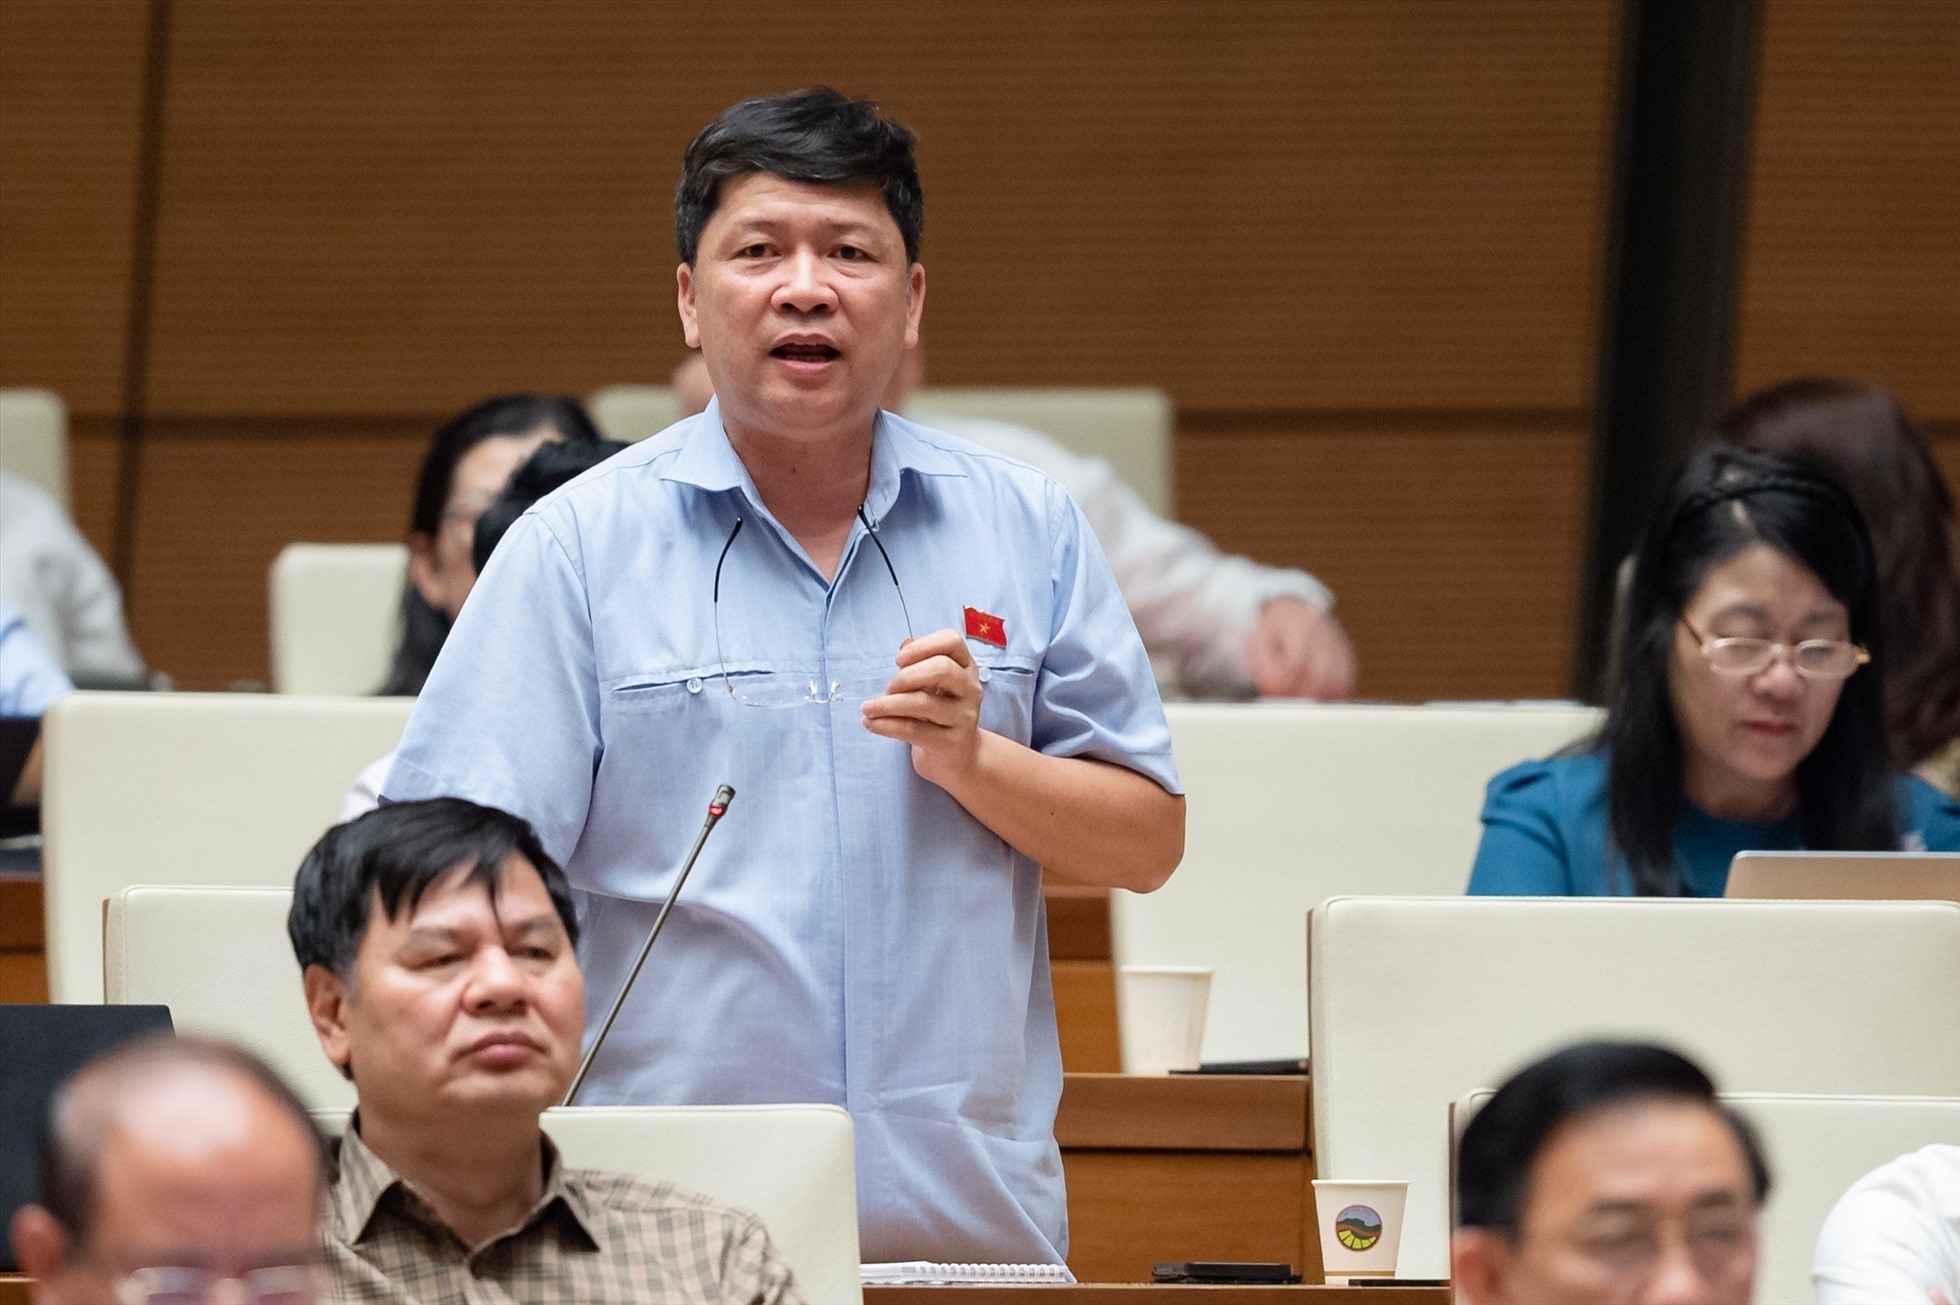 Đại biểu Tạ Văn Hạ - Đoàn ĐBQH tỉnh Quảng Nam tranh luận. Ảnh: Quốc hội